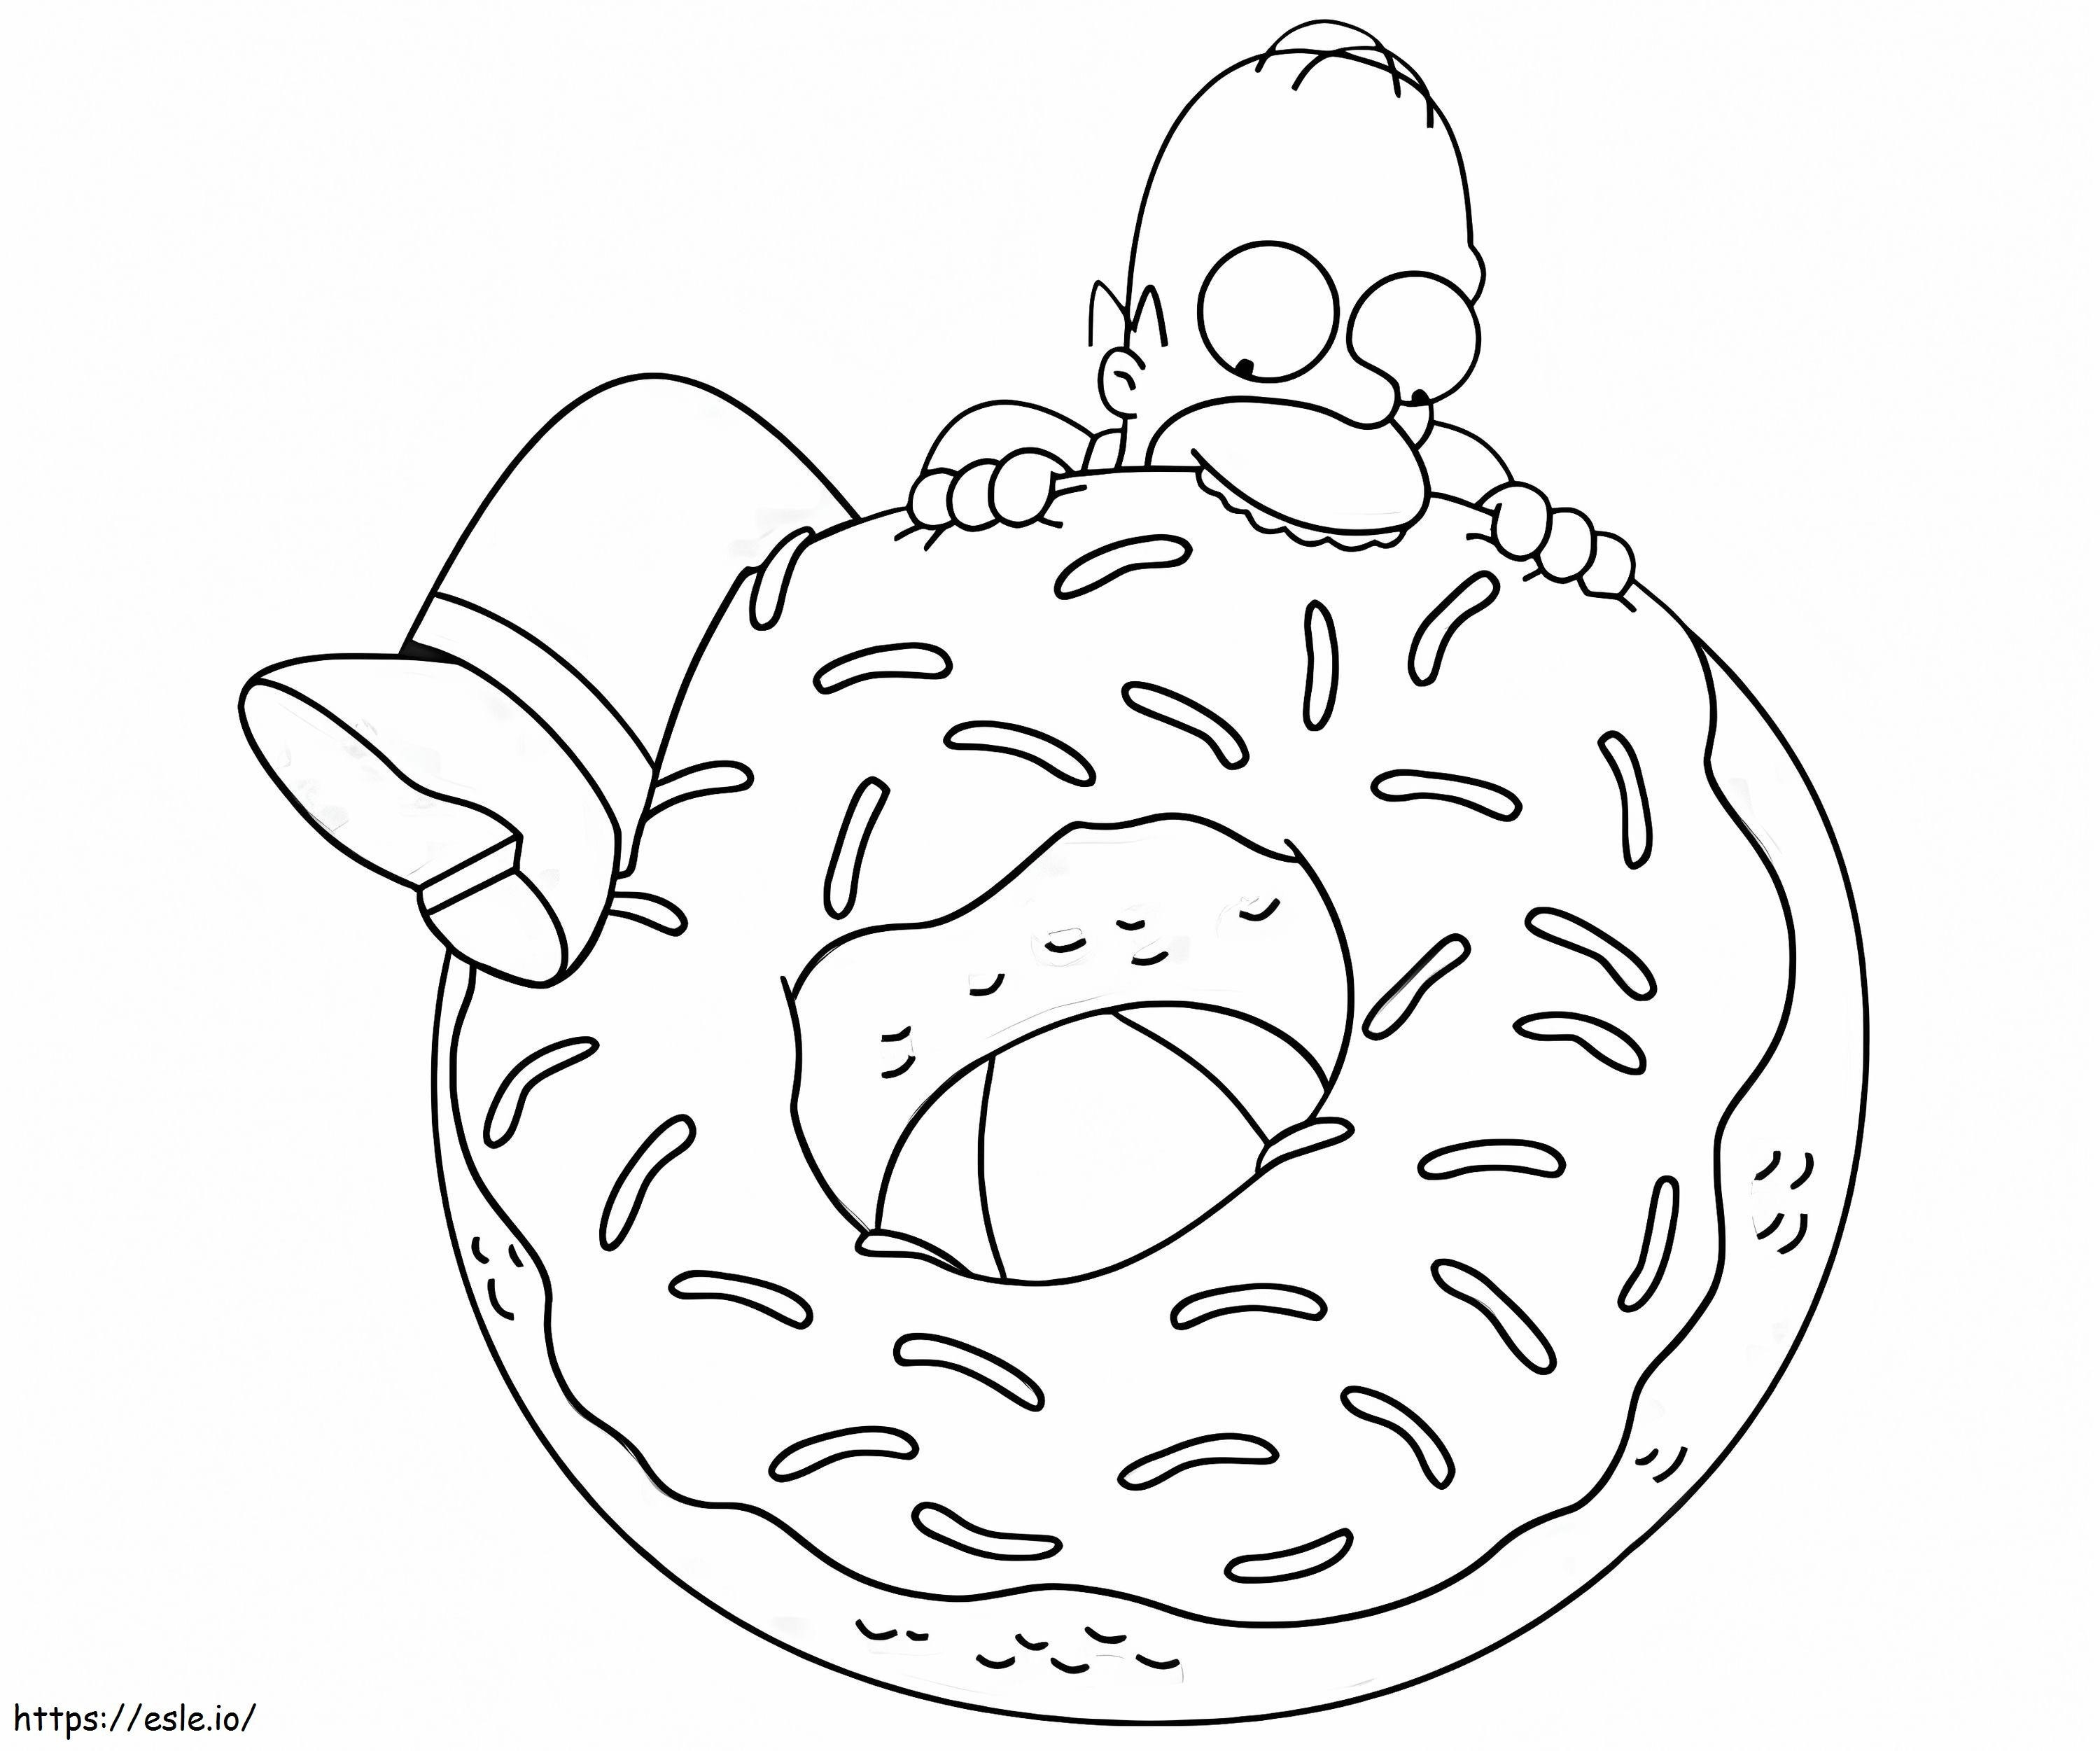 Büyük Donutlu Homer Simpson boyama